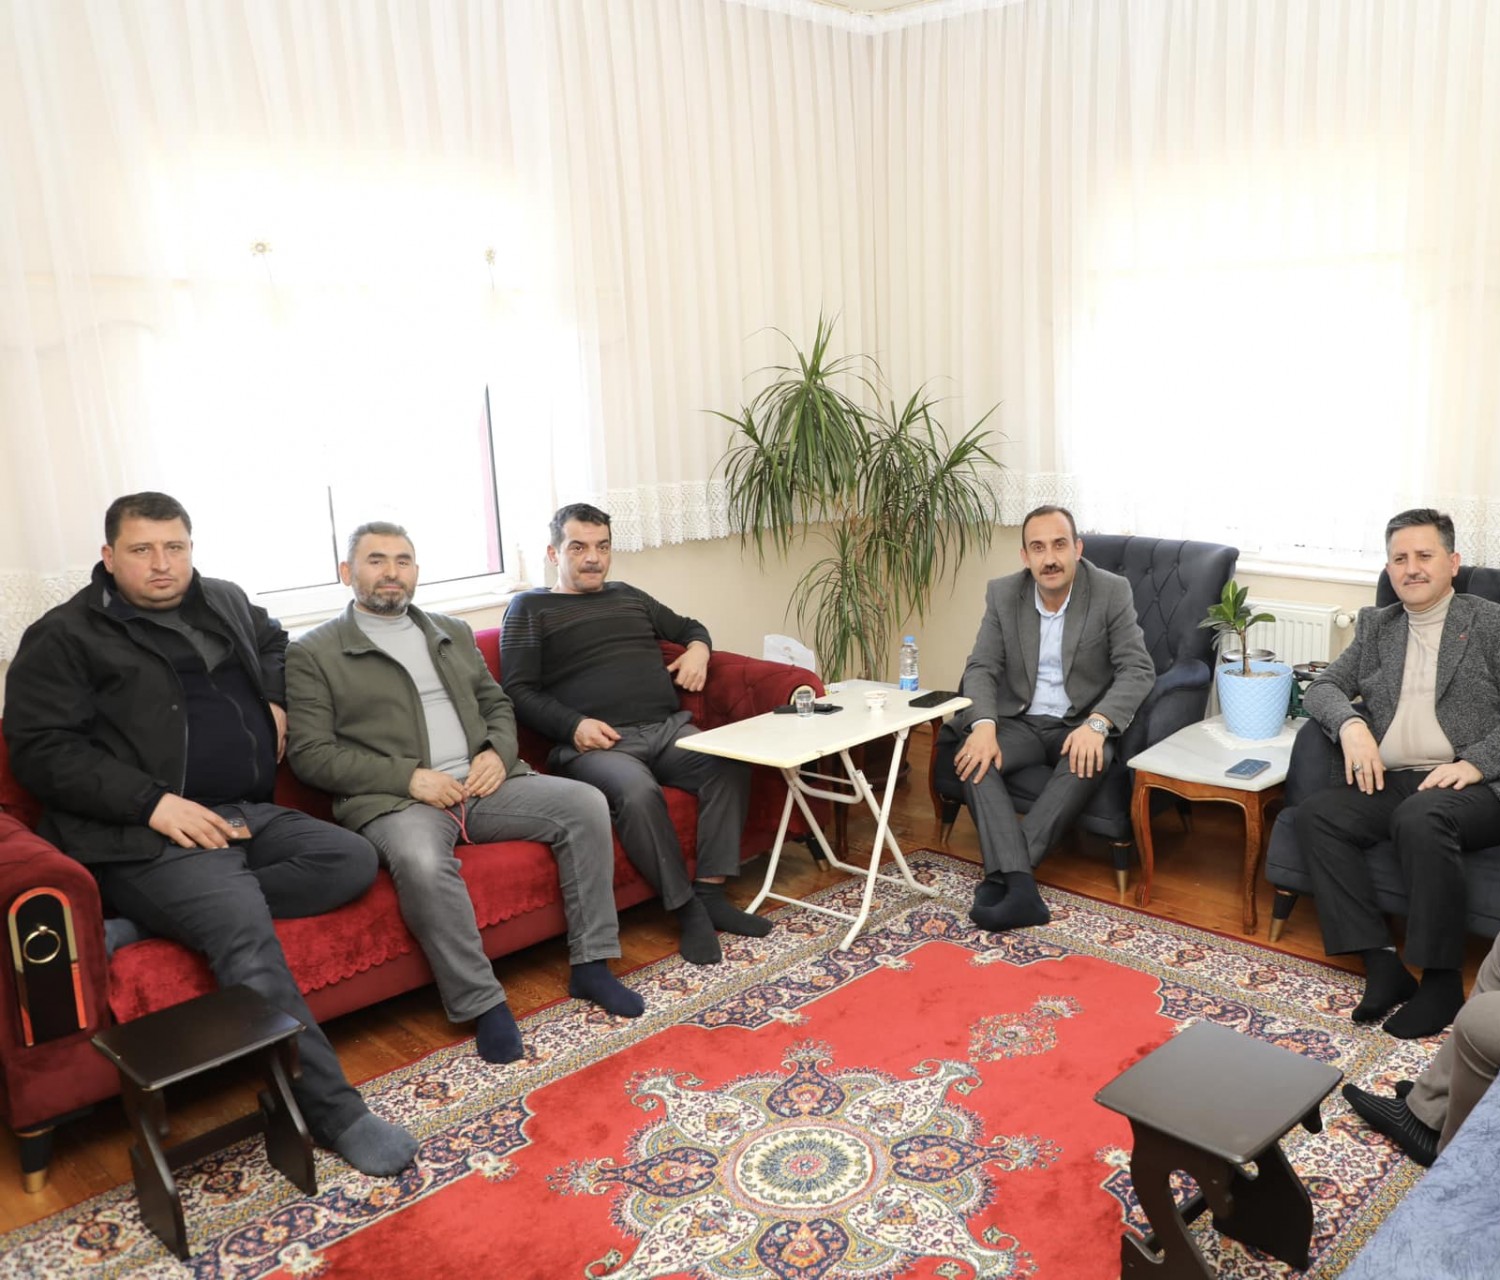 Belediye Başkanımız Av. Mustafa İlmek, AK Parti İlçe Başkanımız Sn. Mehmet Koç ile Yönetim Kurulu Üyeleri ile birlikte İsmail Ekizoğlu'na geçmiş olsun ziyaretinde bulundu.